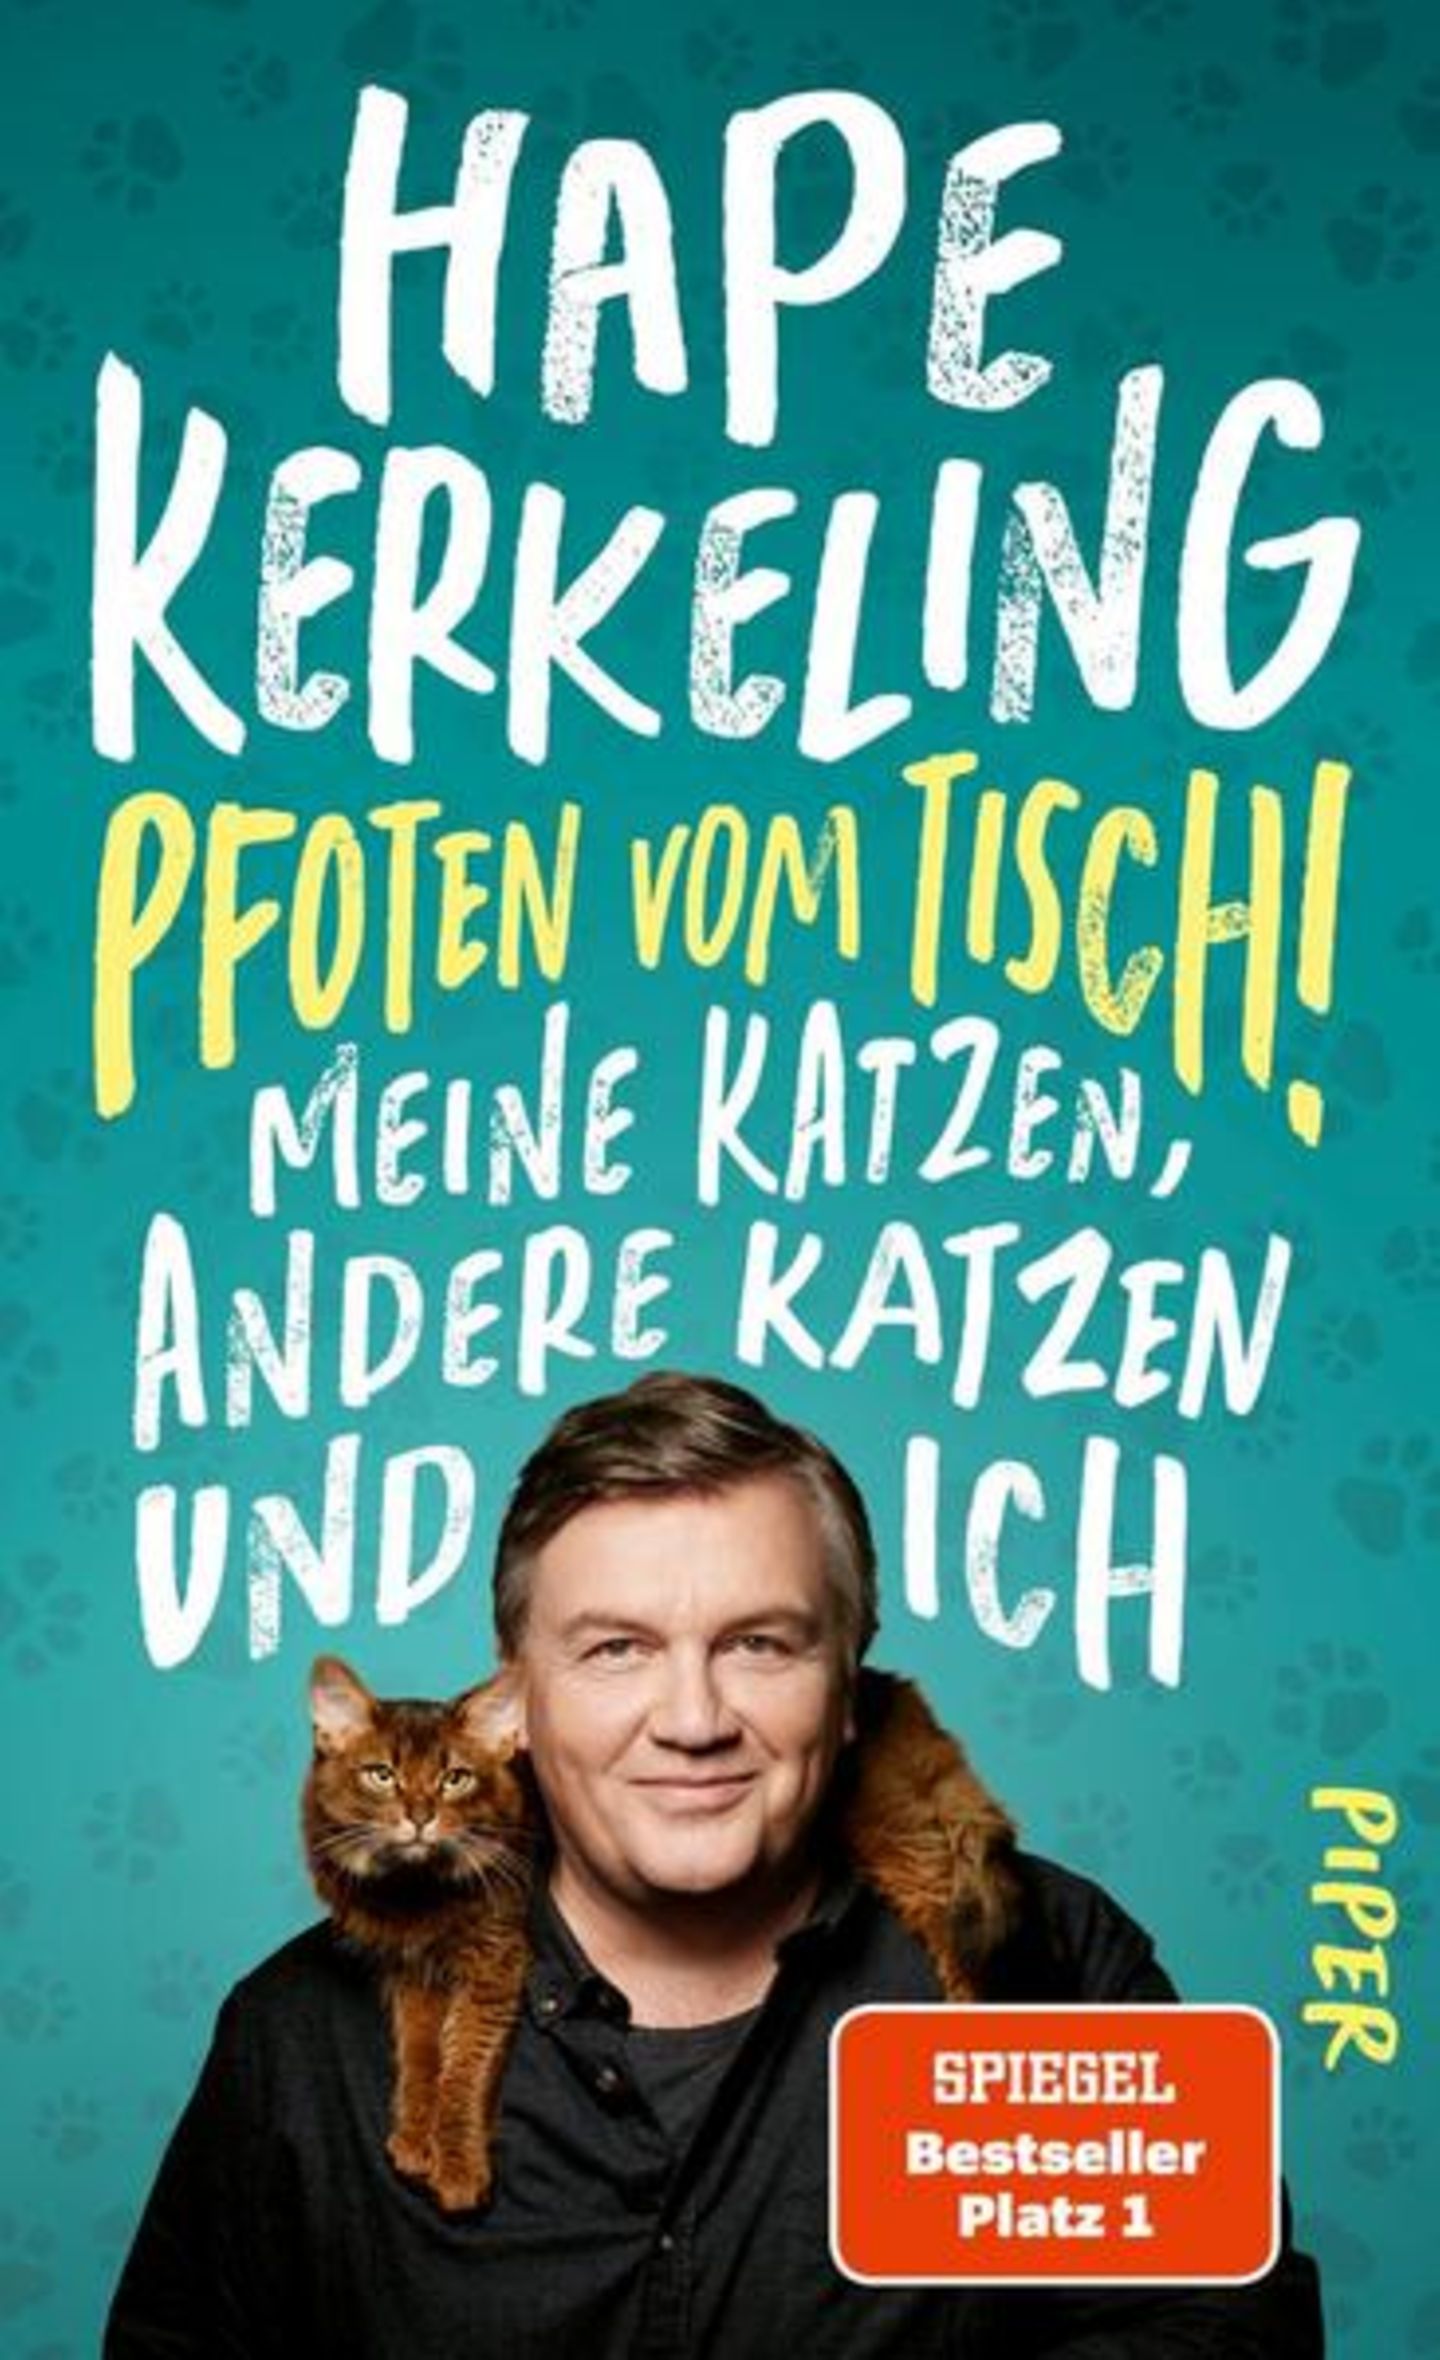 Buch-Charts: Hape Kerkeling: "Pfoten vom Tisch! Meine Katzen, andere Katzen und ich"